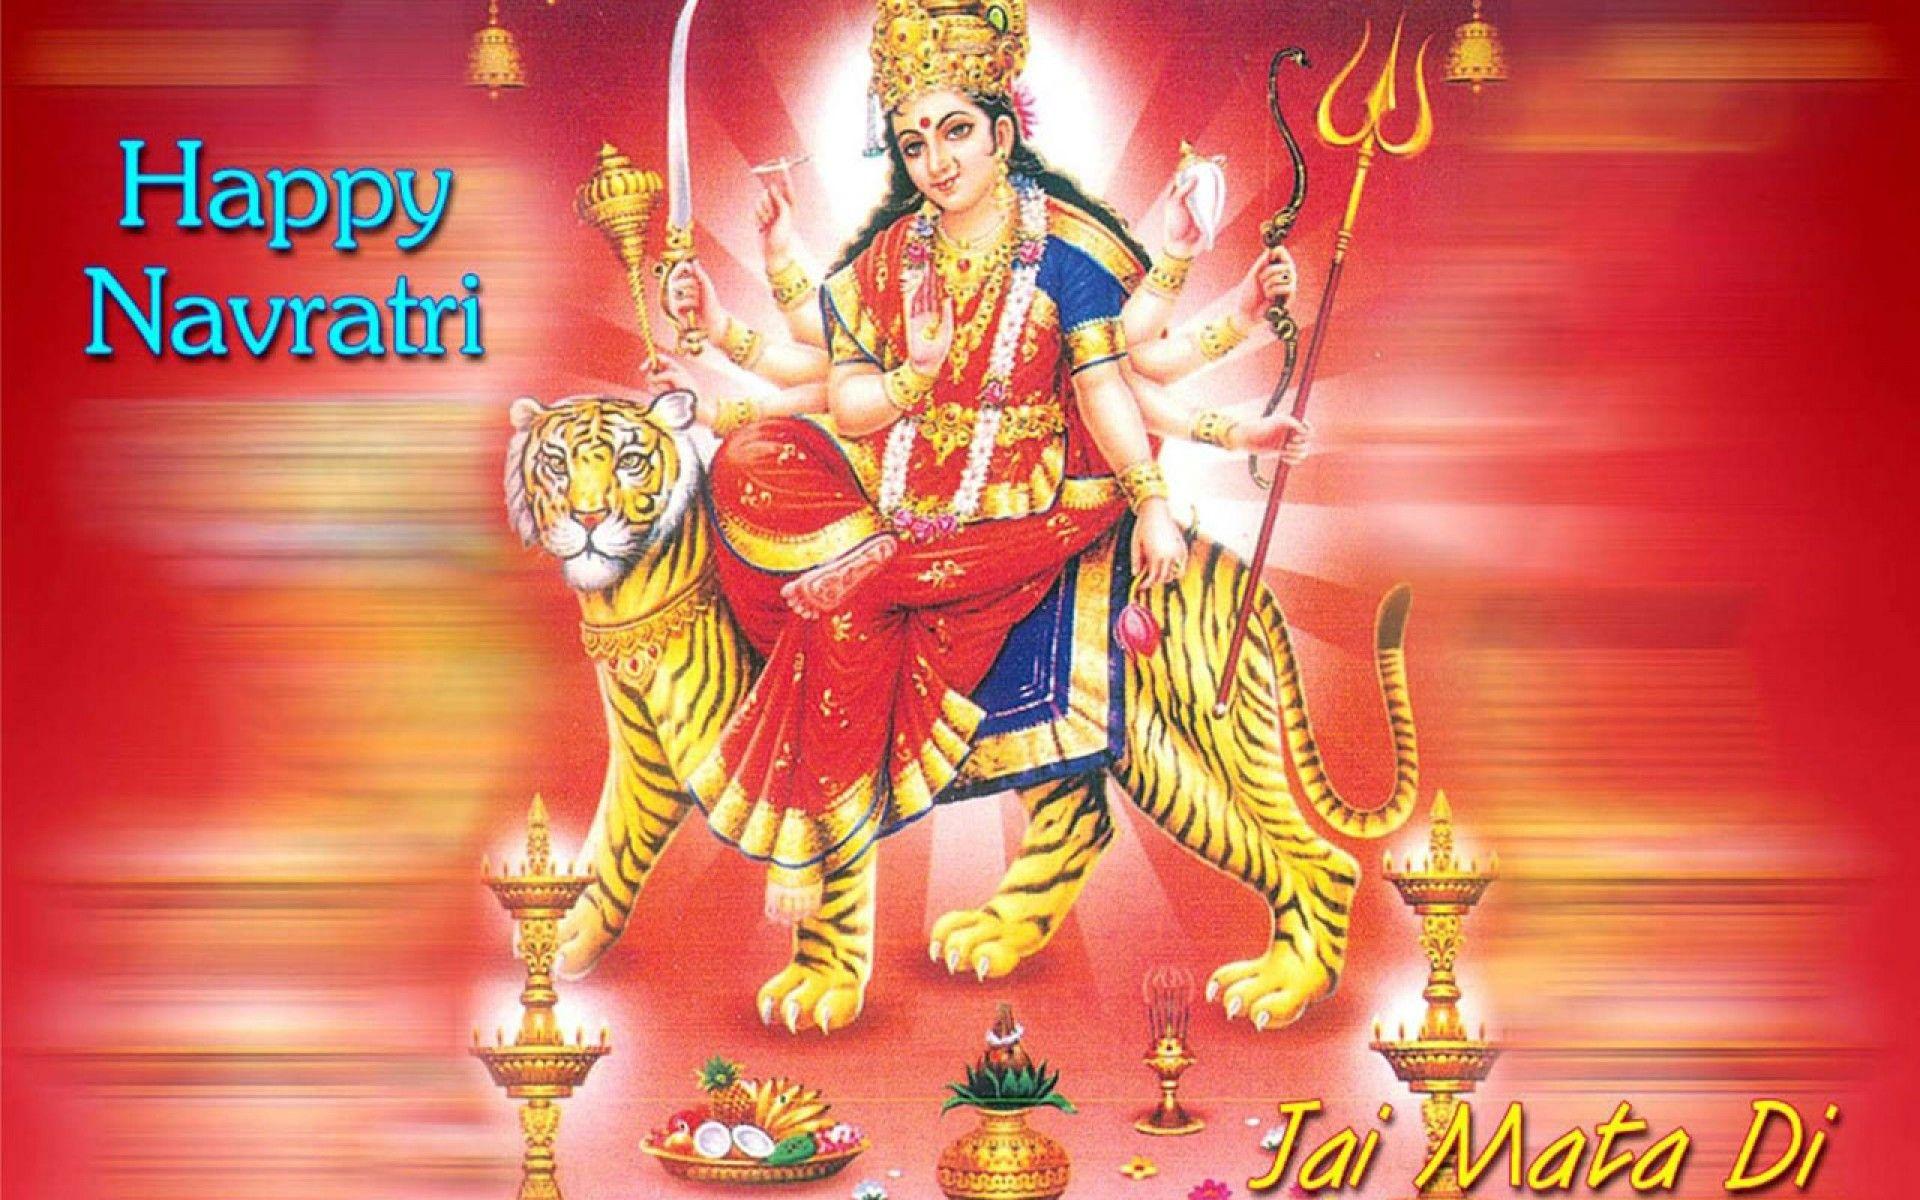 1920x1200 Hình nền hoạt hình Navratri HD Group - Happy Navratri Maa Durga - Hình nền 1920x1200